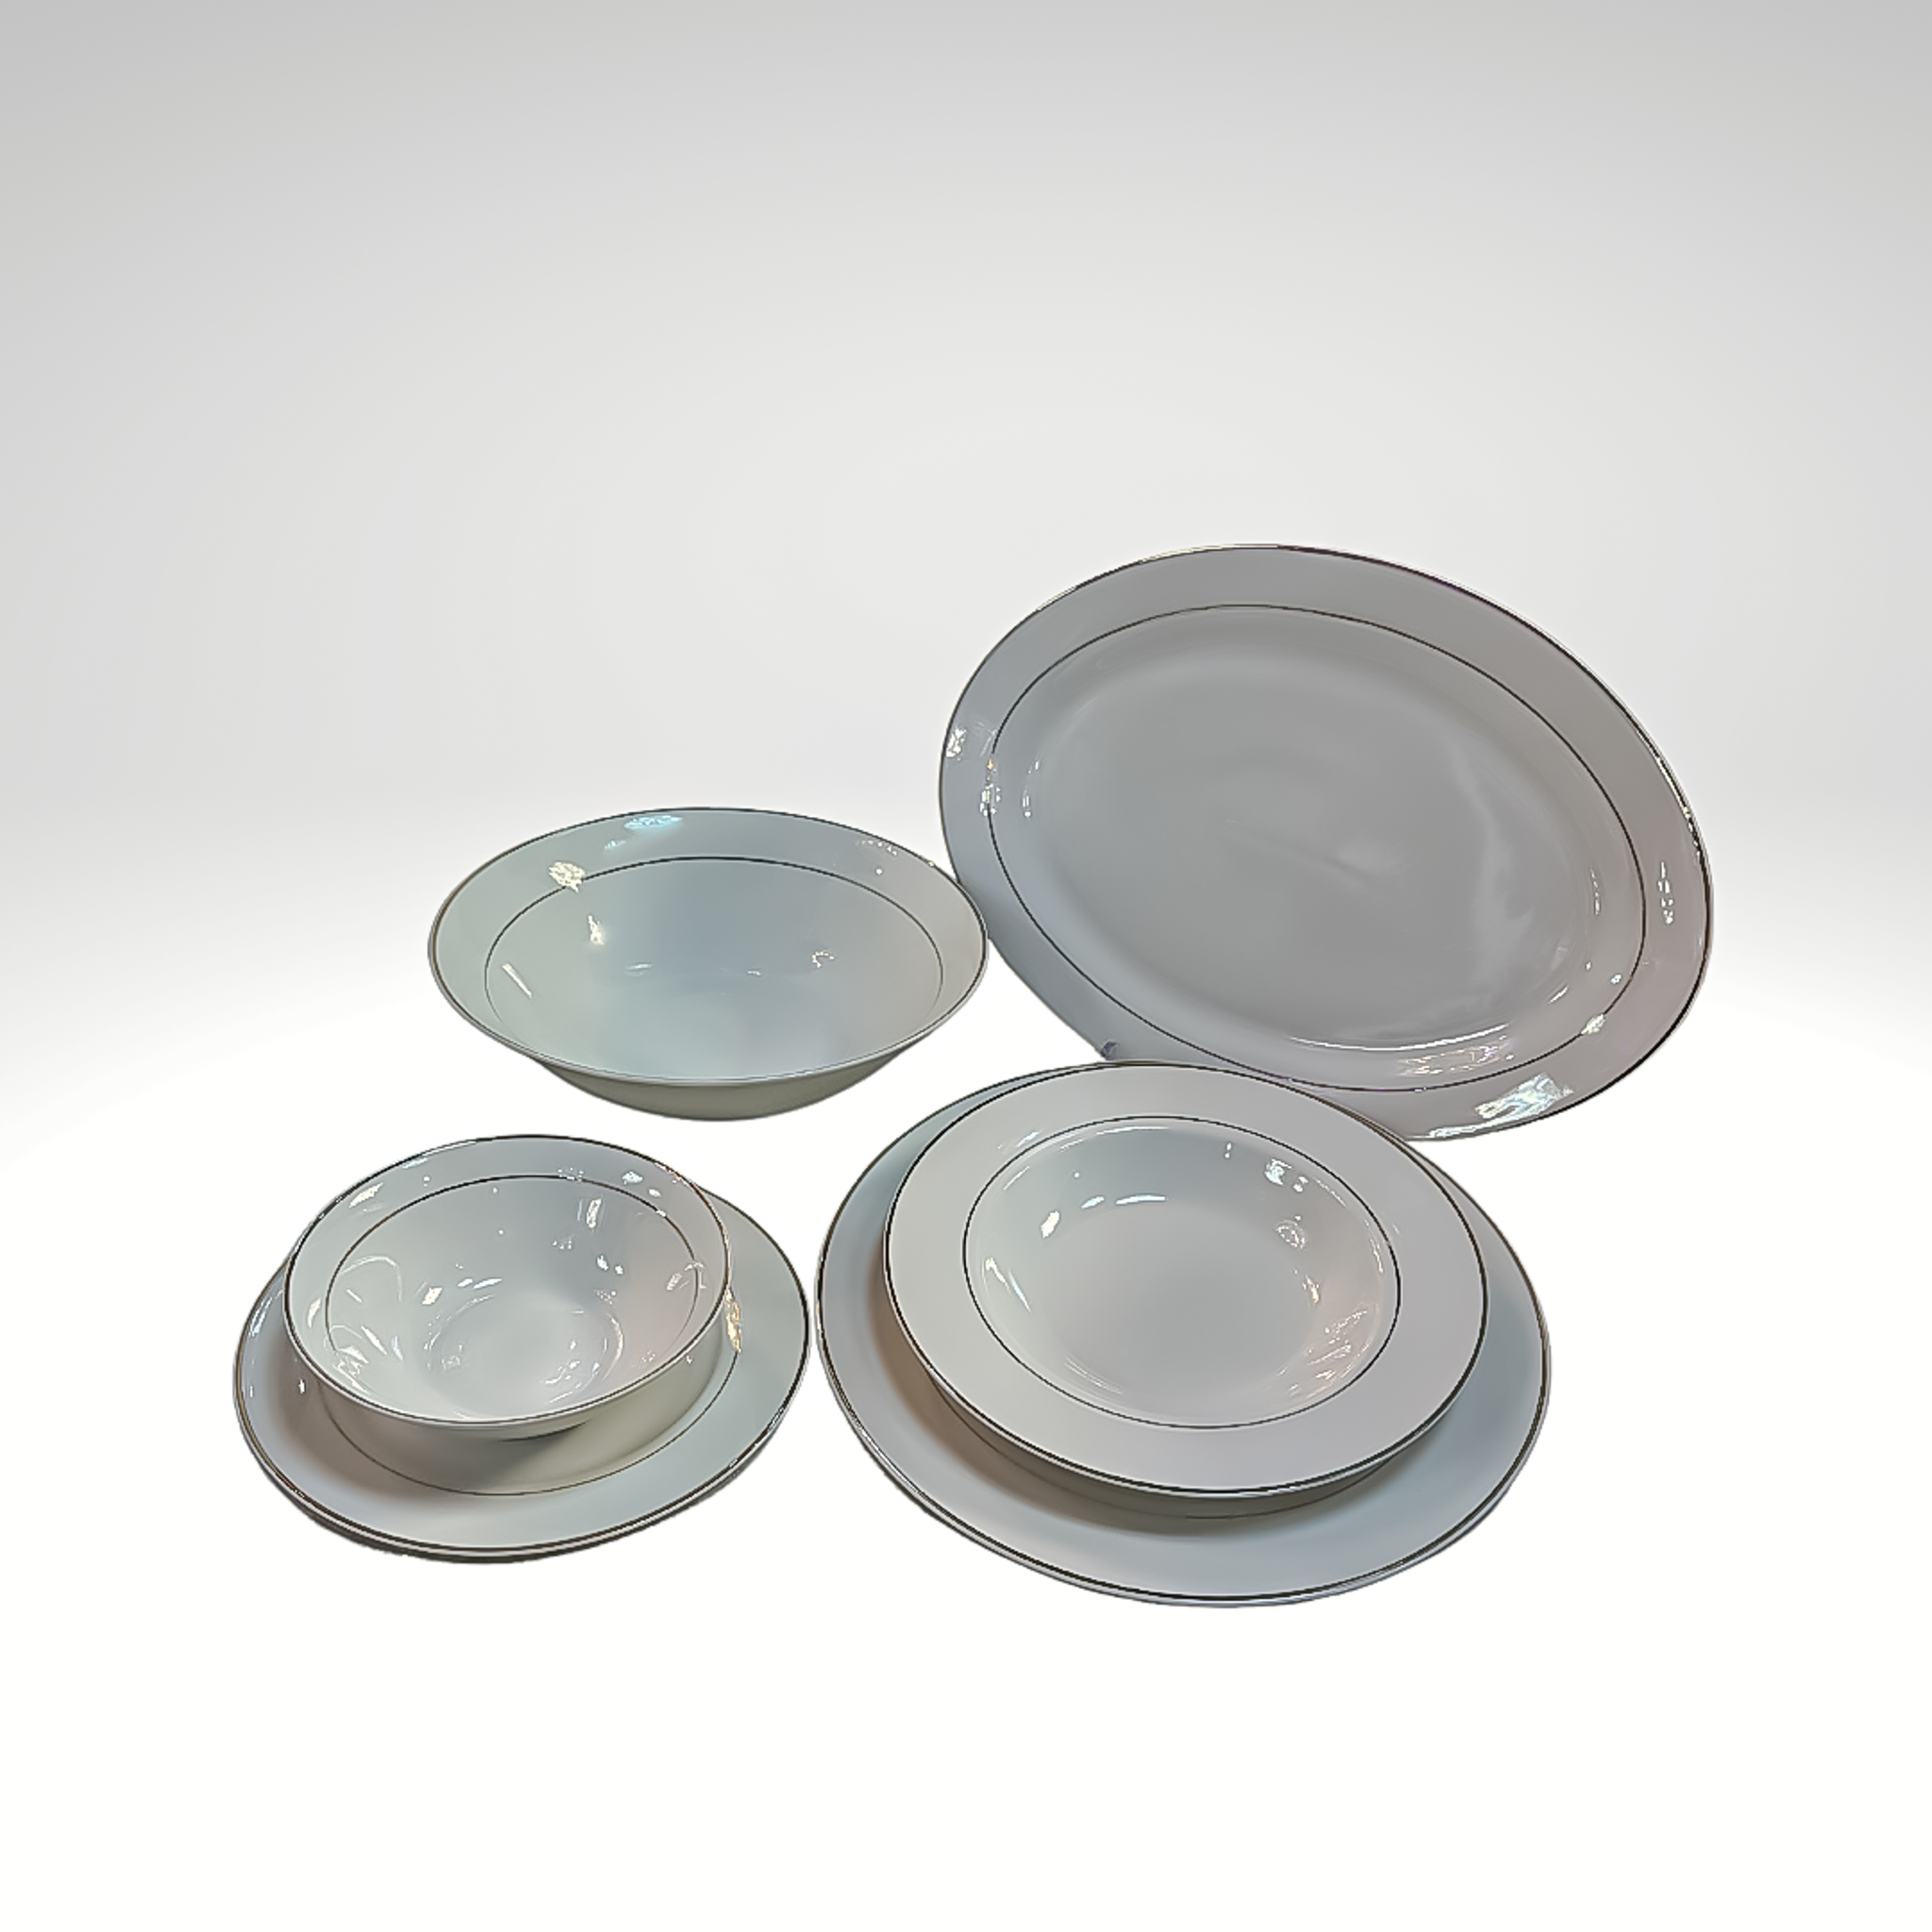 Plats de table ovales céramique, plat de service de table.